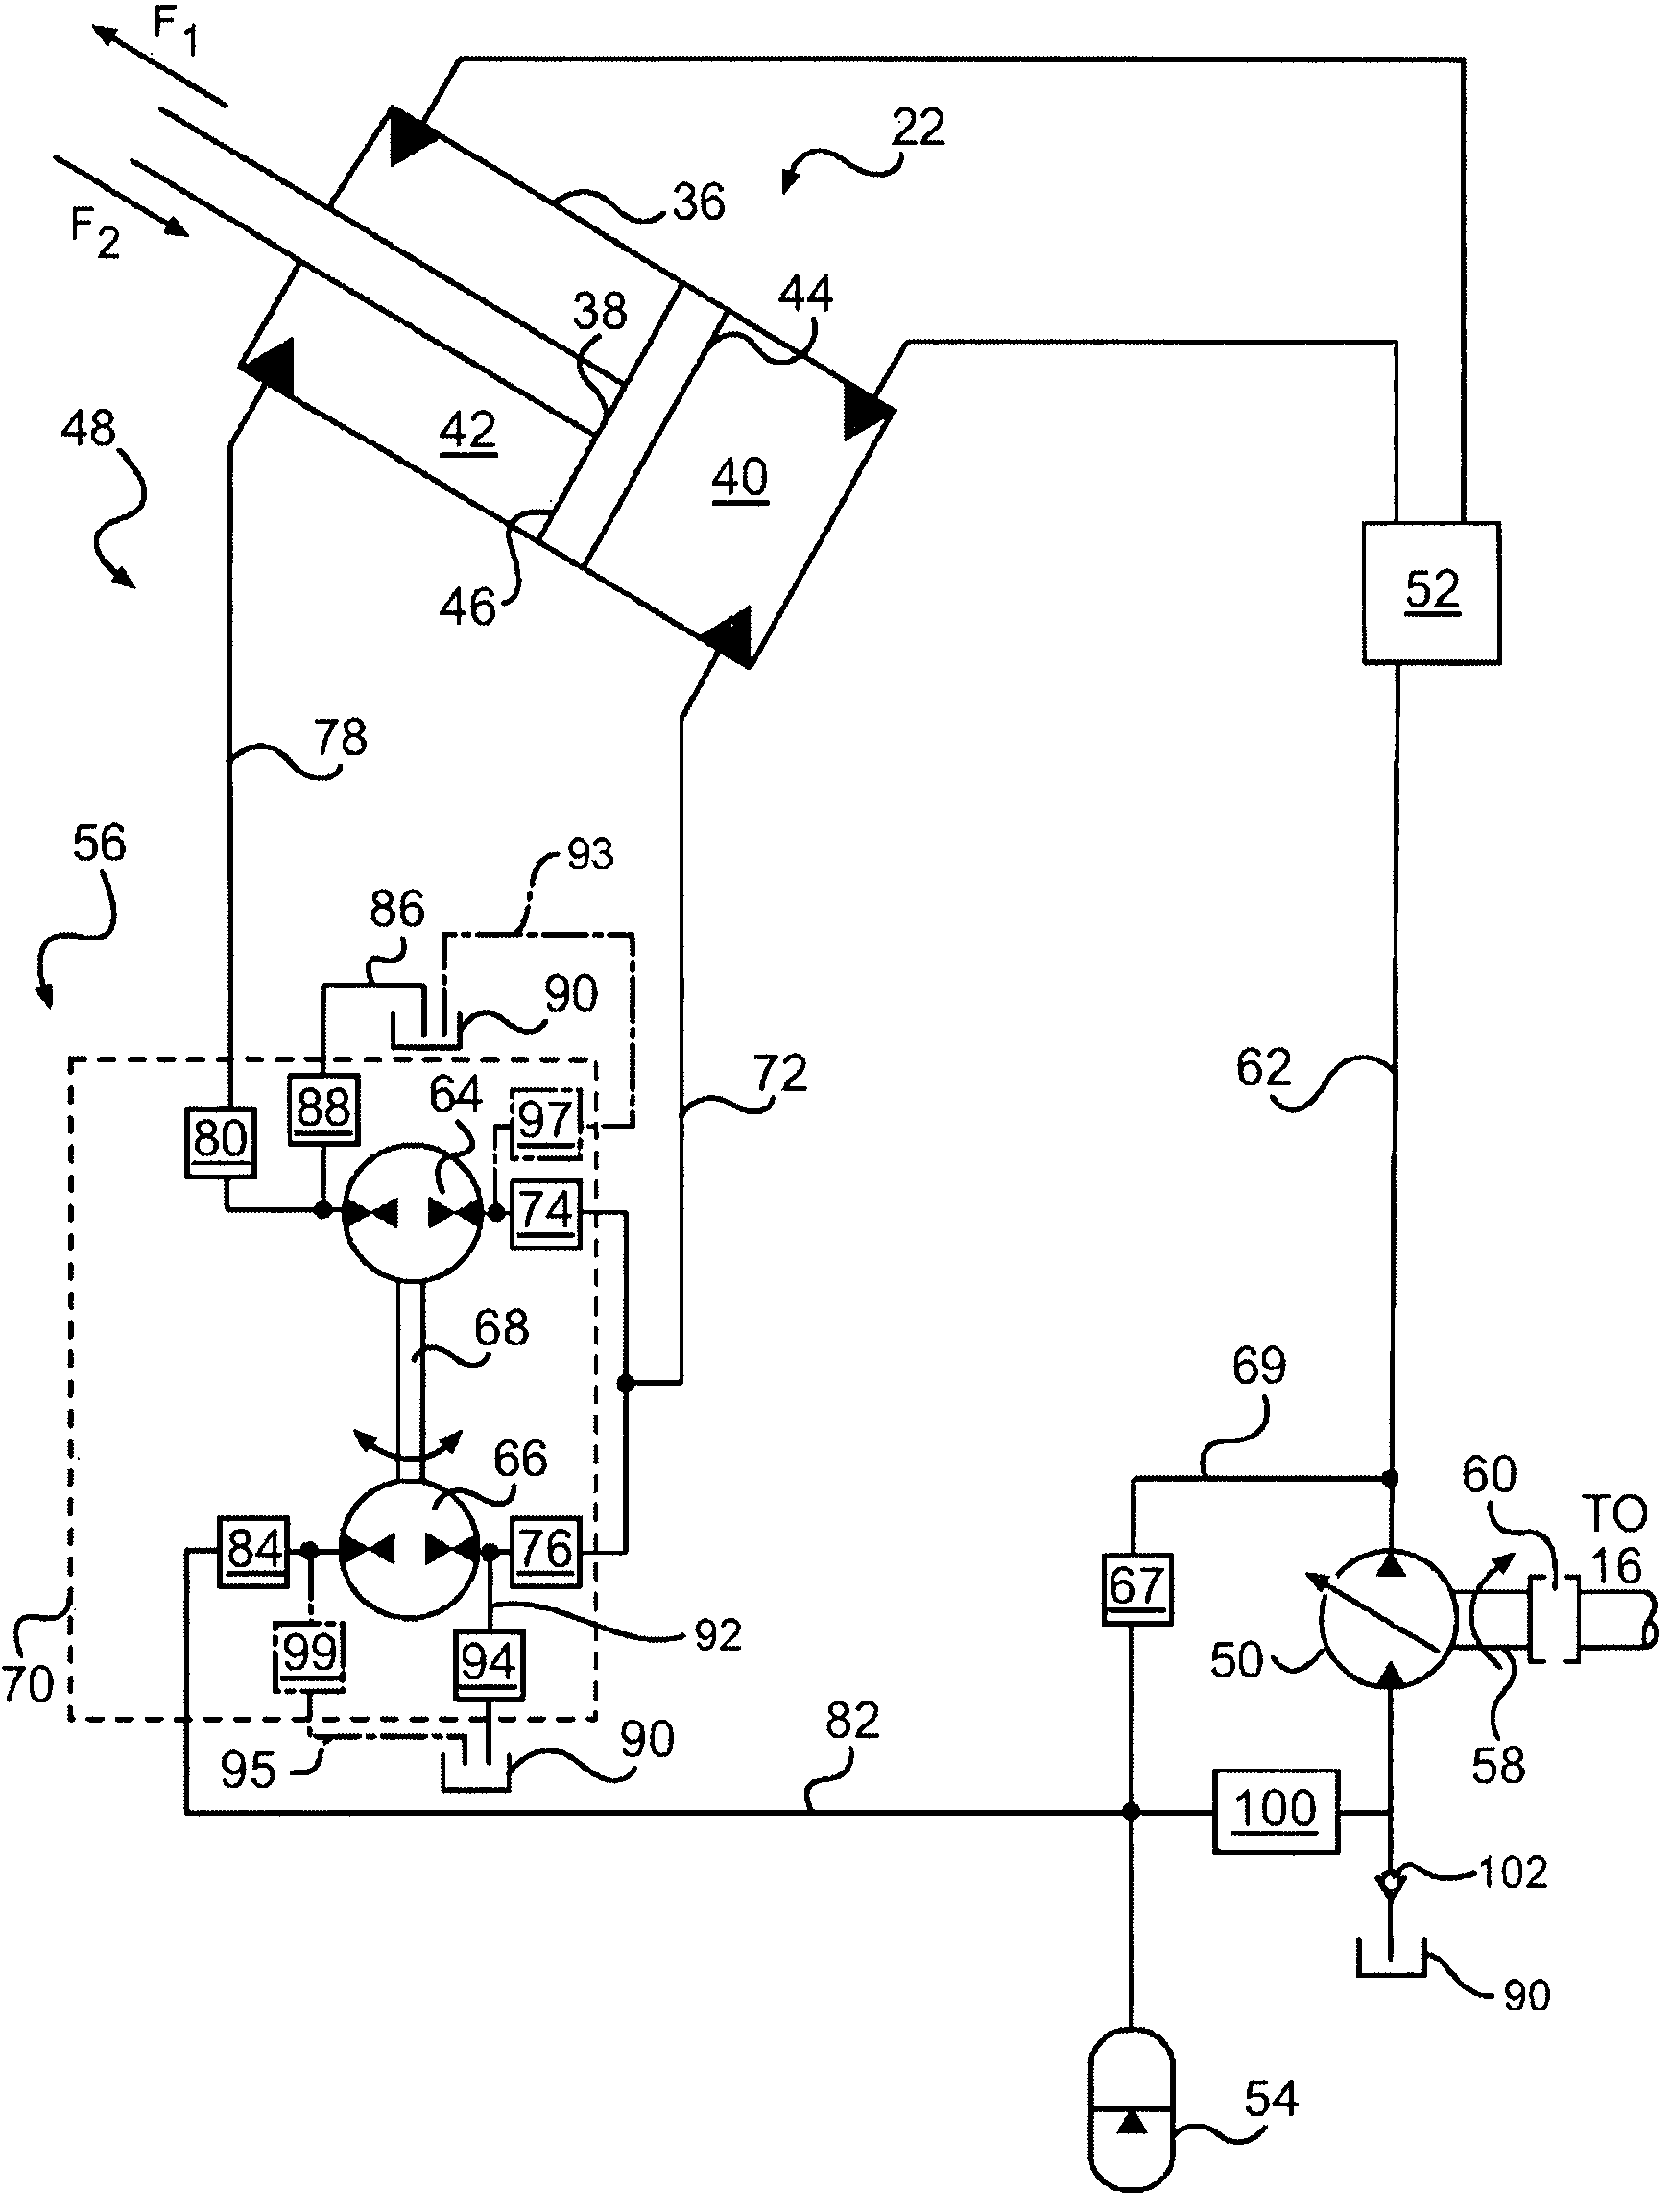 Bidirectional hydraulic transformer